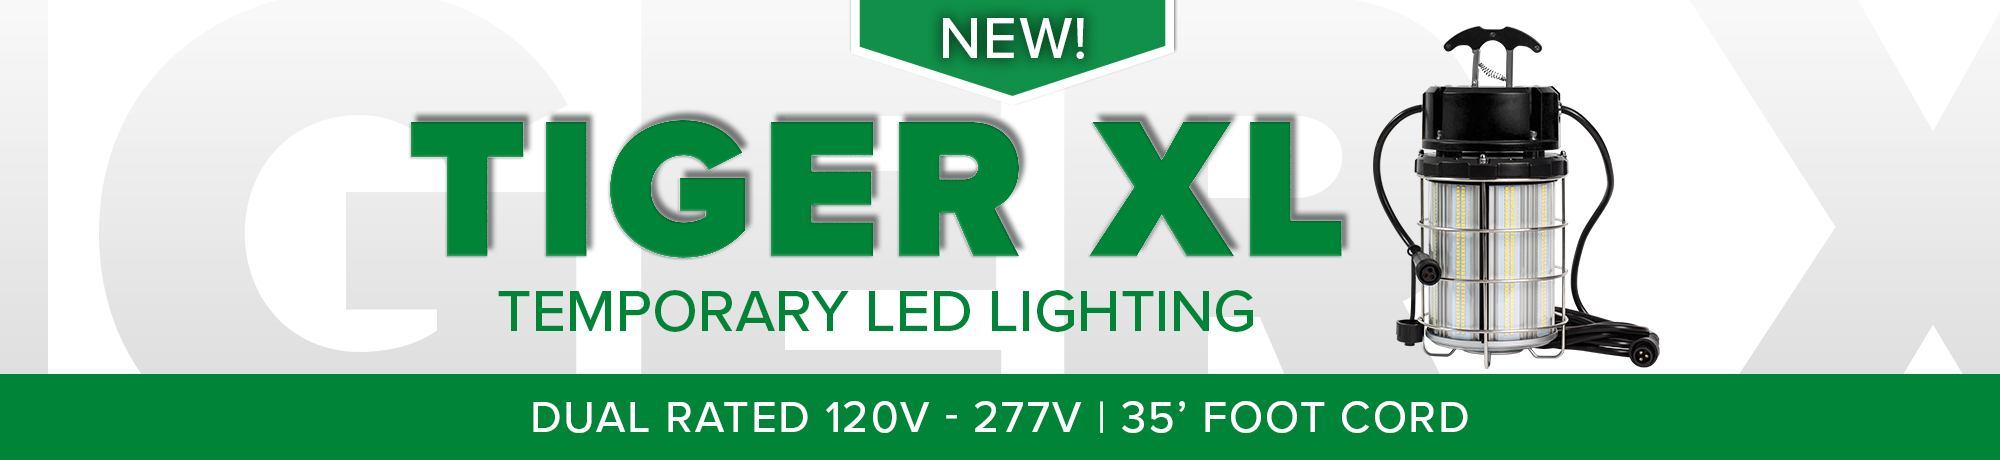 TIGER XL Temporary LED Luminaire